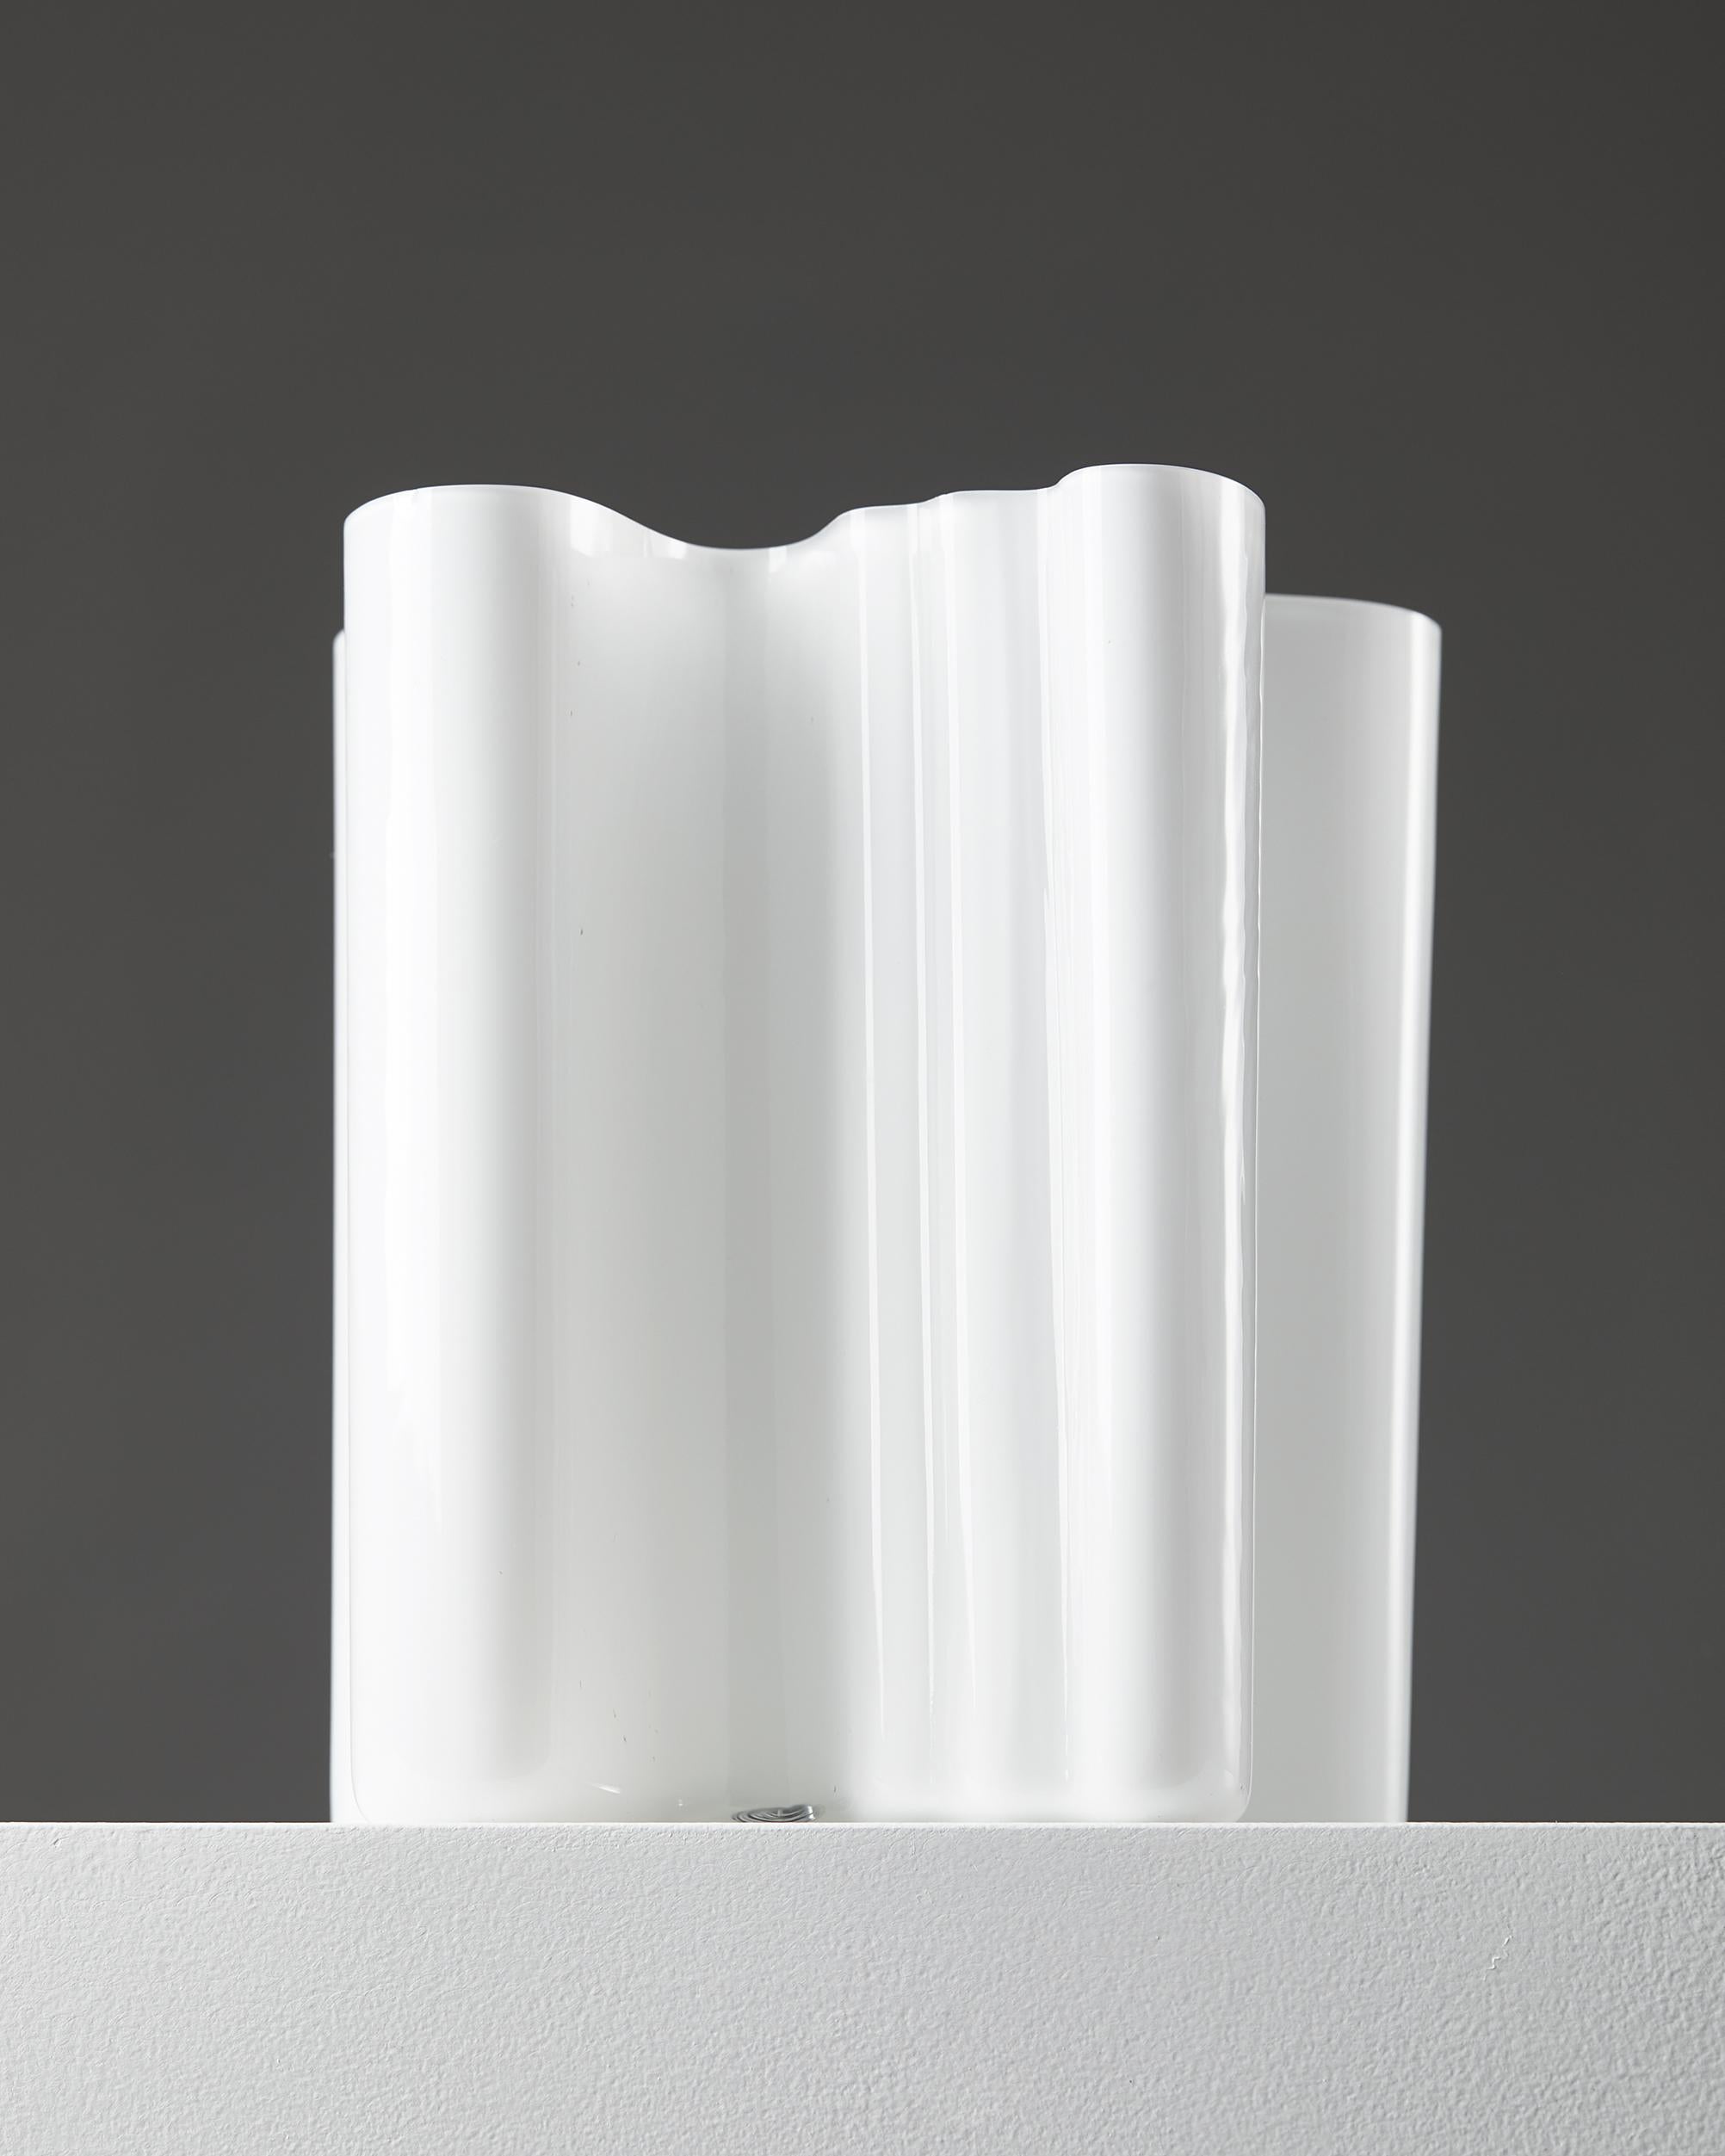 Finnish Vase, “model 3031” Designed by Alvar Aalto,